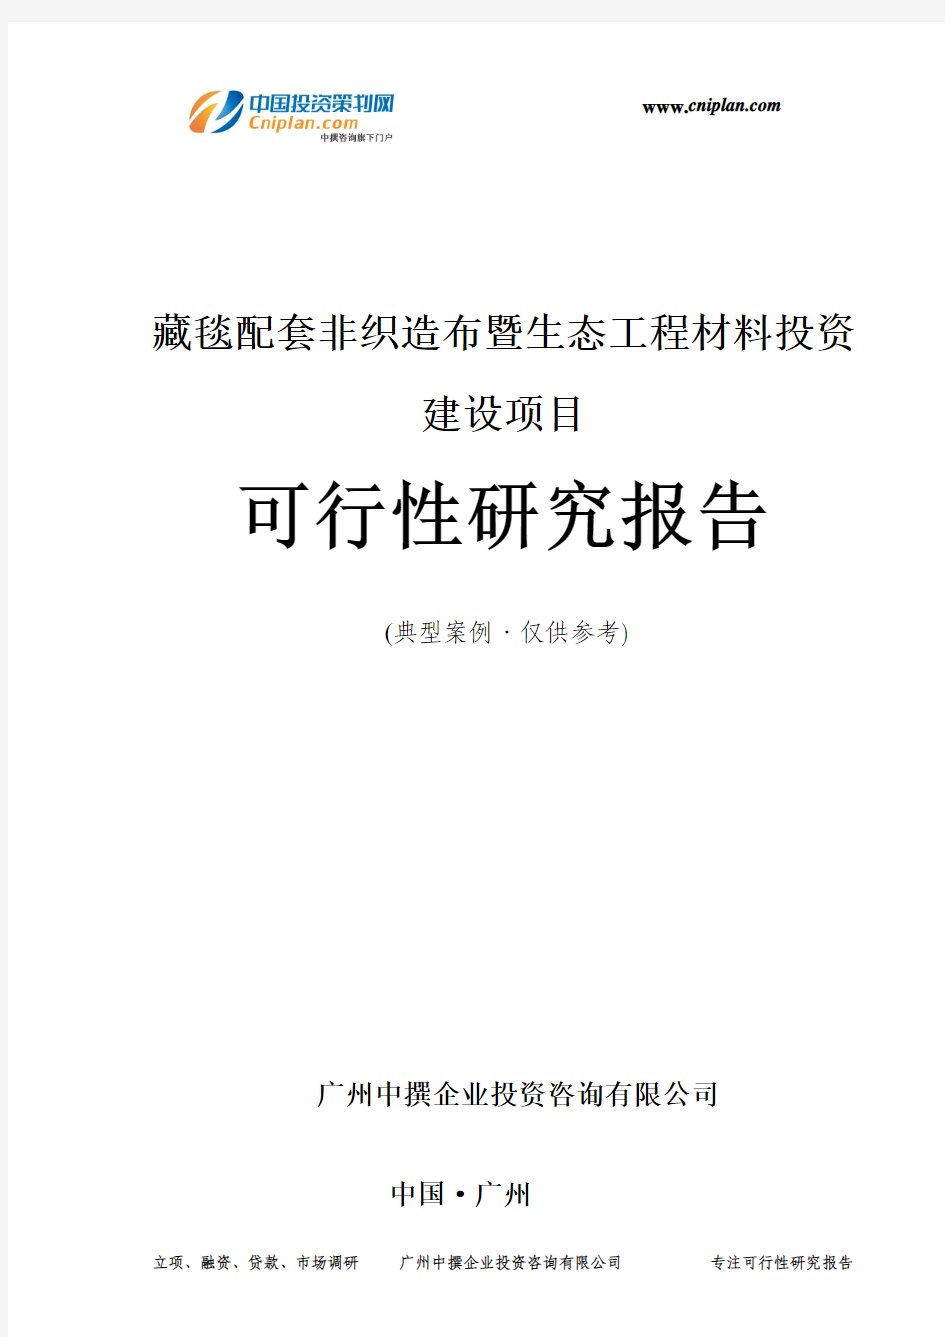 藏毯配套非织造布暨生态工程材料投资建设项目可行性研究报告-广州中撰咨询